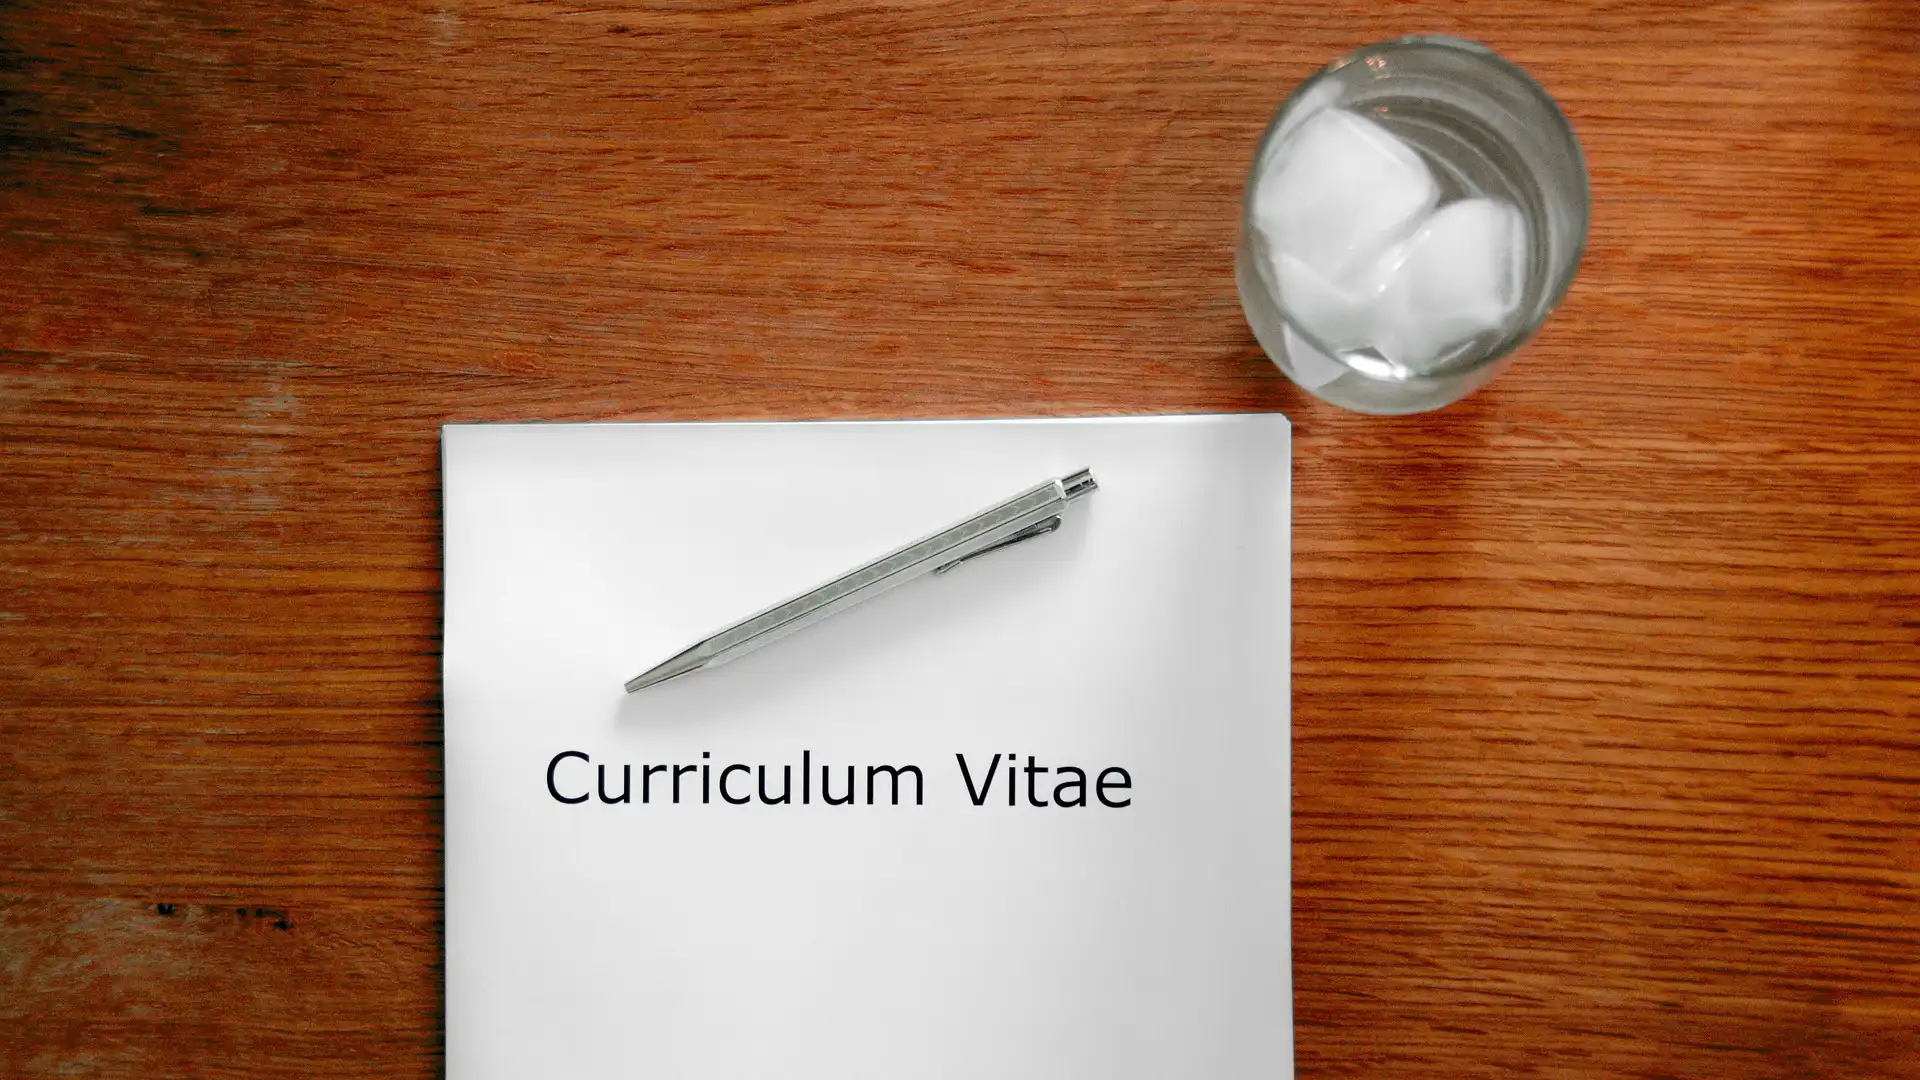 Tavolo con bicchiere, penna e carta con scritto "Curriculum vitae"